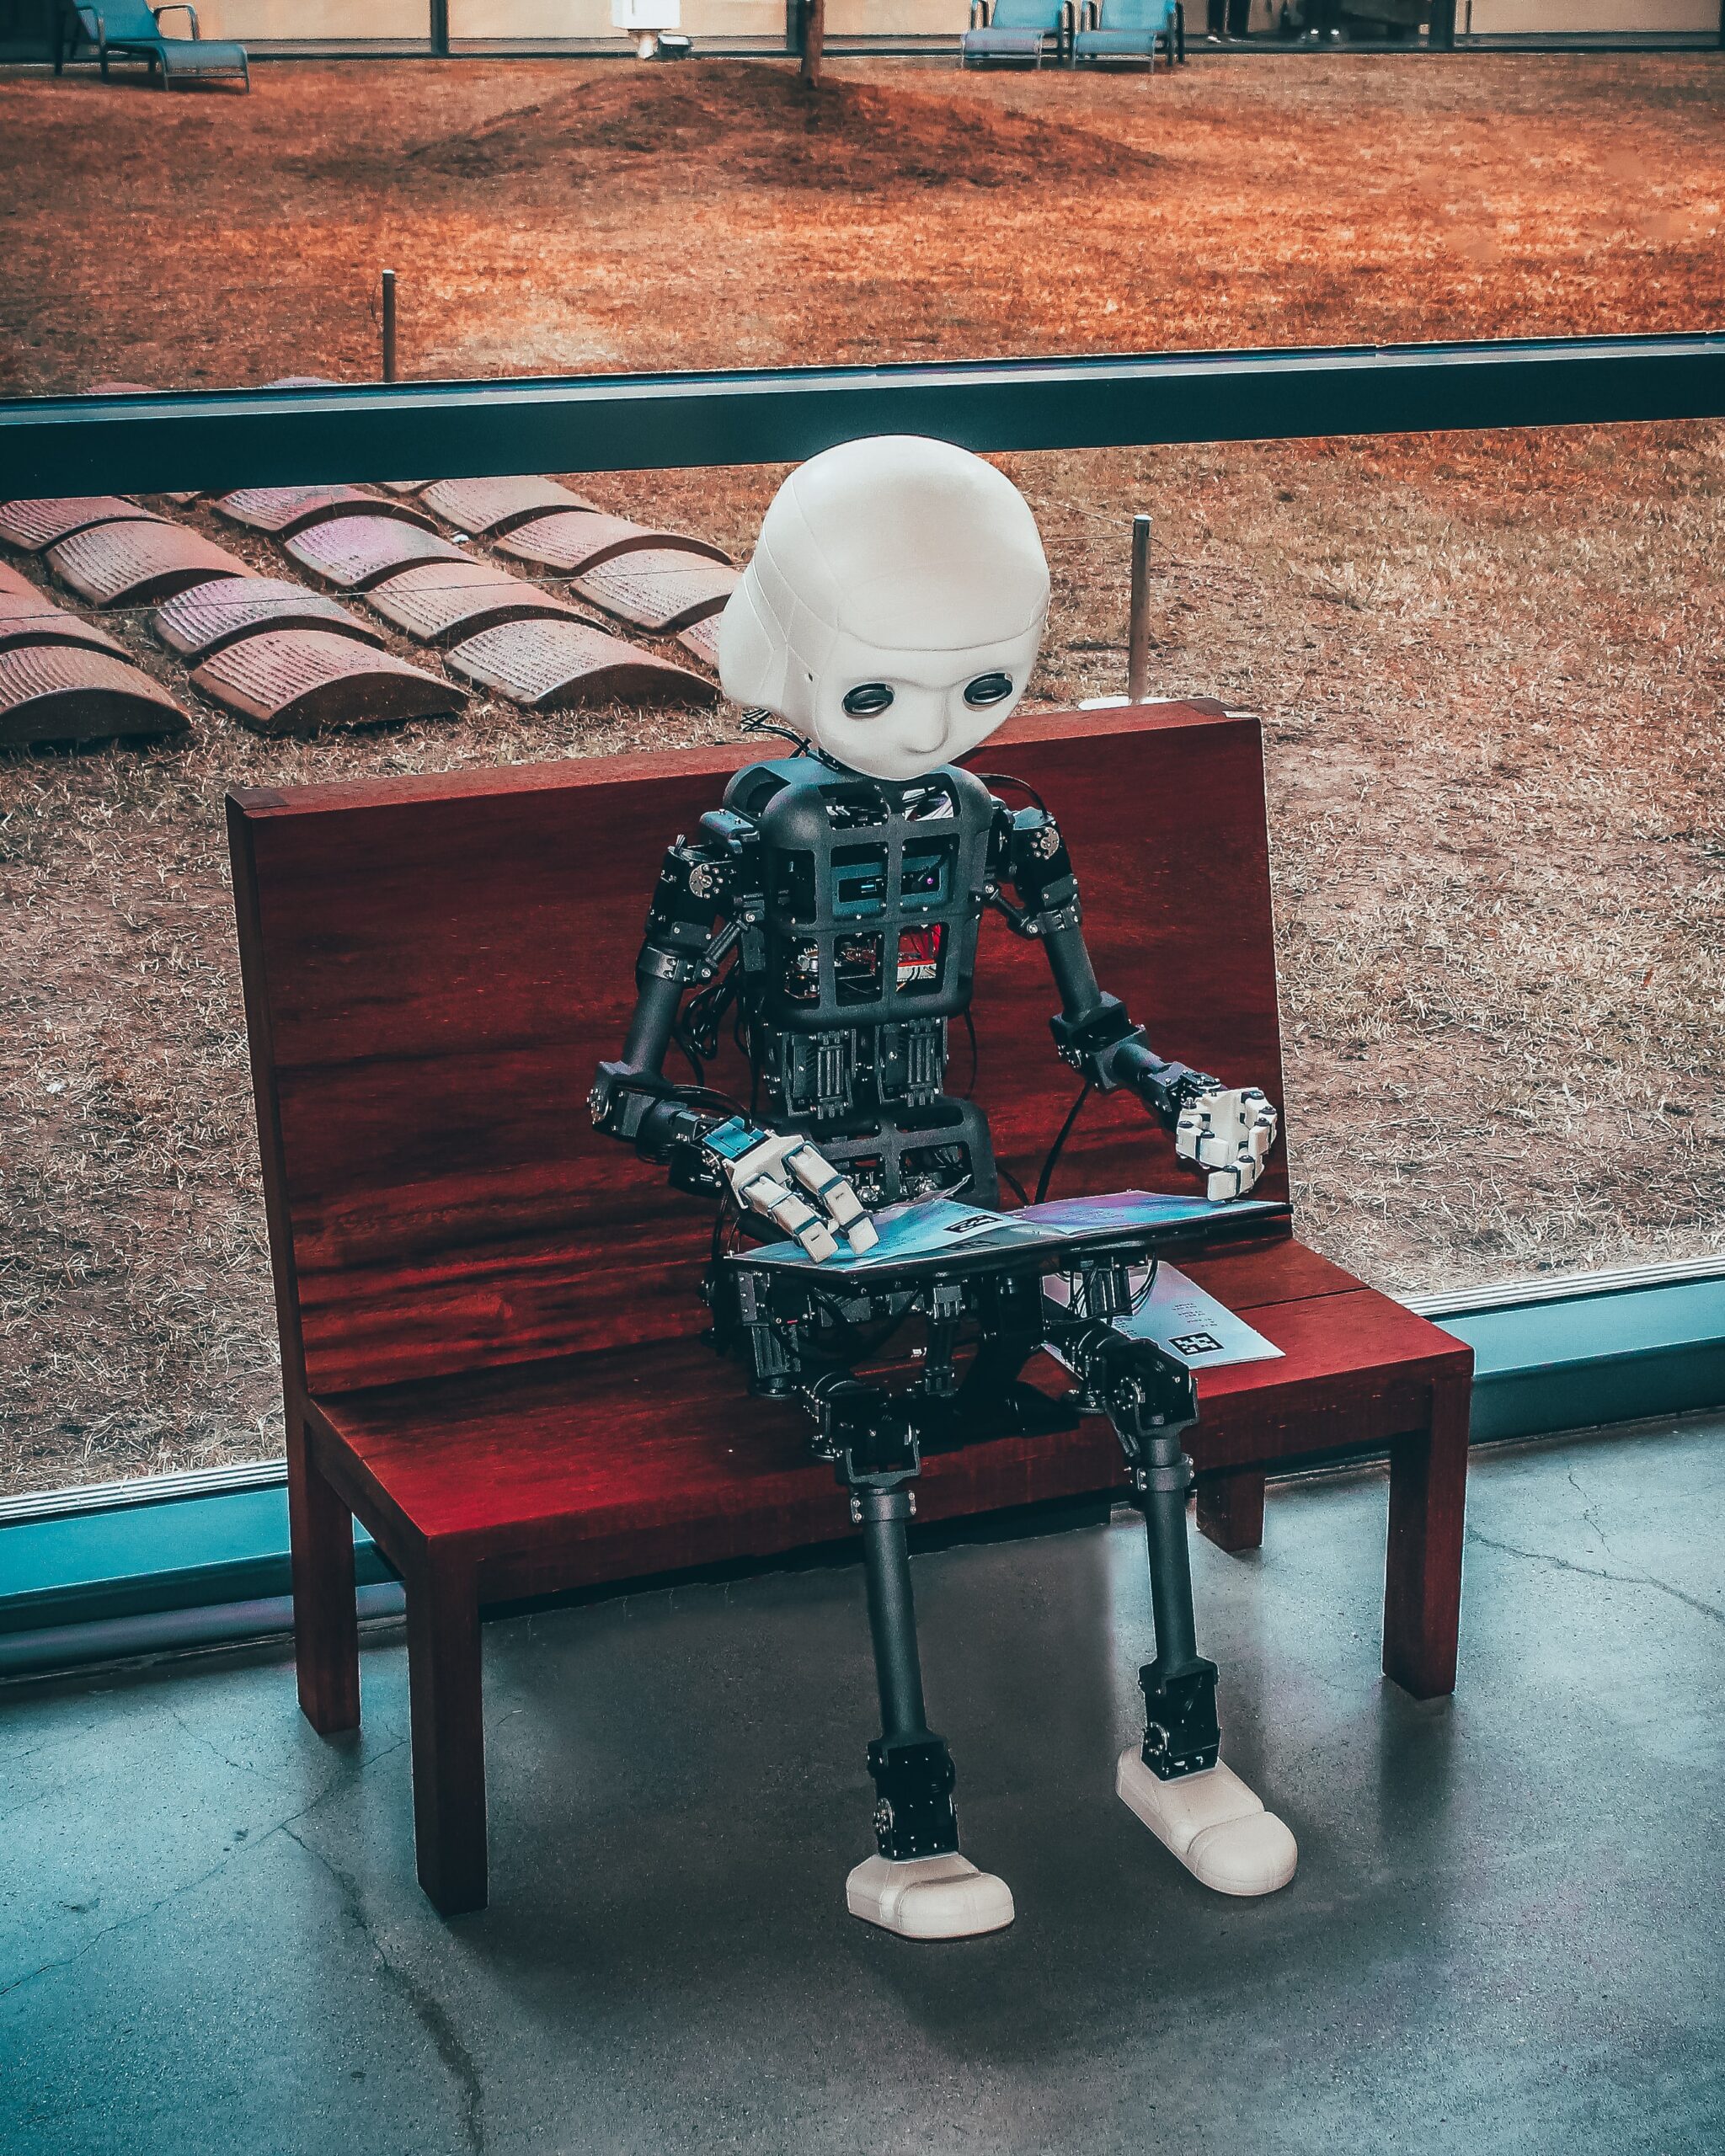 How autonomous automation is the future